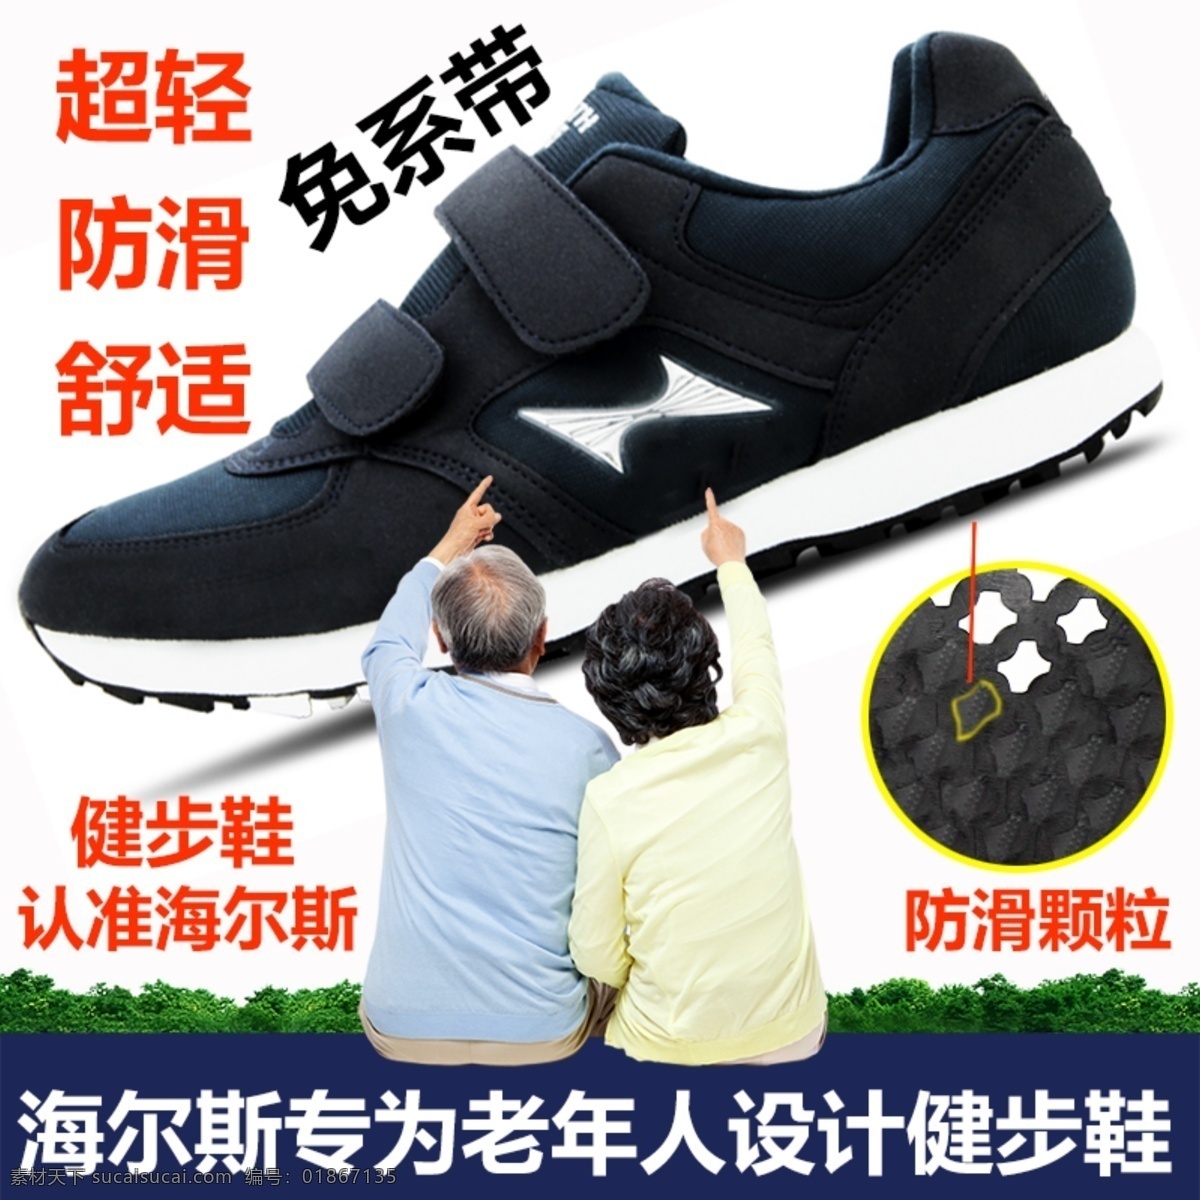 海尔斯 老年 鞋 舒适 防滑 老年鞋 健步鞋 淘宝界面设计 淘宝 广告 banner